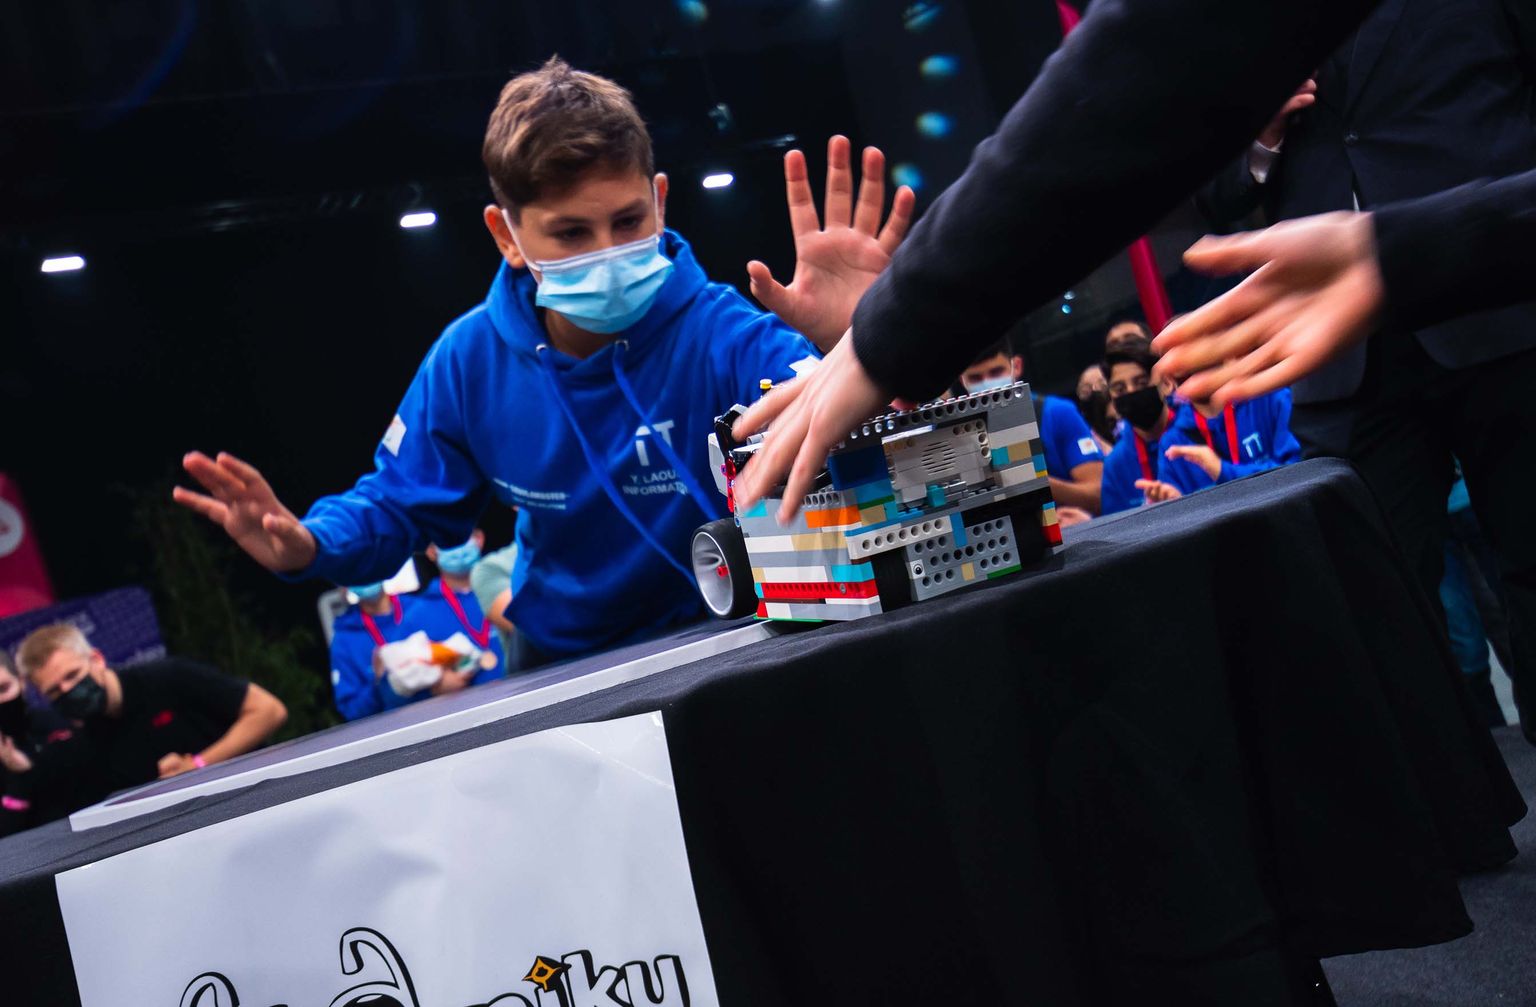 Eelvõistlusel tuleb osaleda Lego Sumo ja Comodule Lego joonejärgimise võistluste puhul, kõikidel teistel võistlustel osalsemiseks võib registreerida otse Robotex internationali keskkonnas.